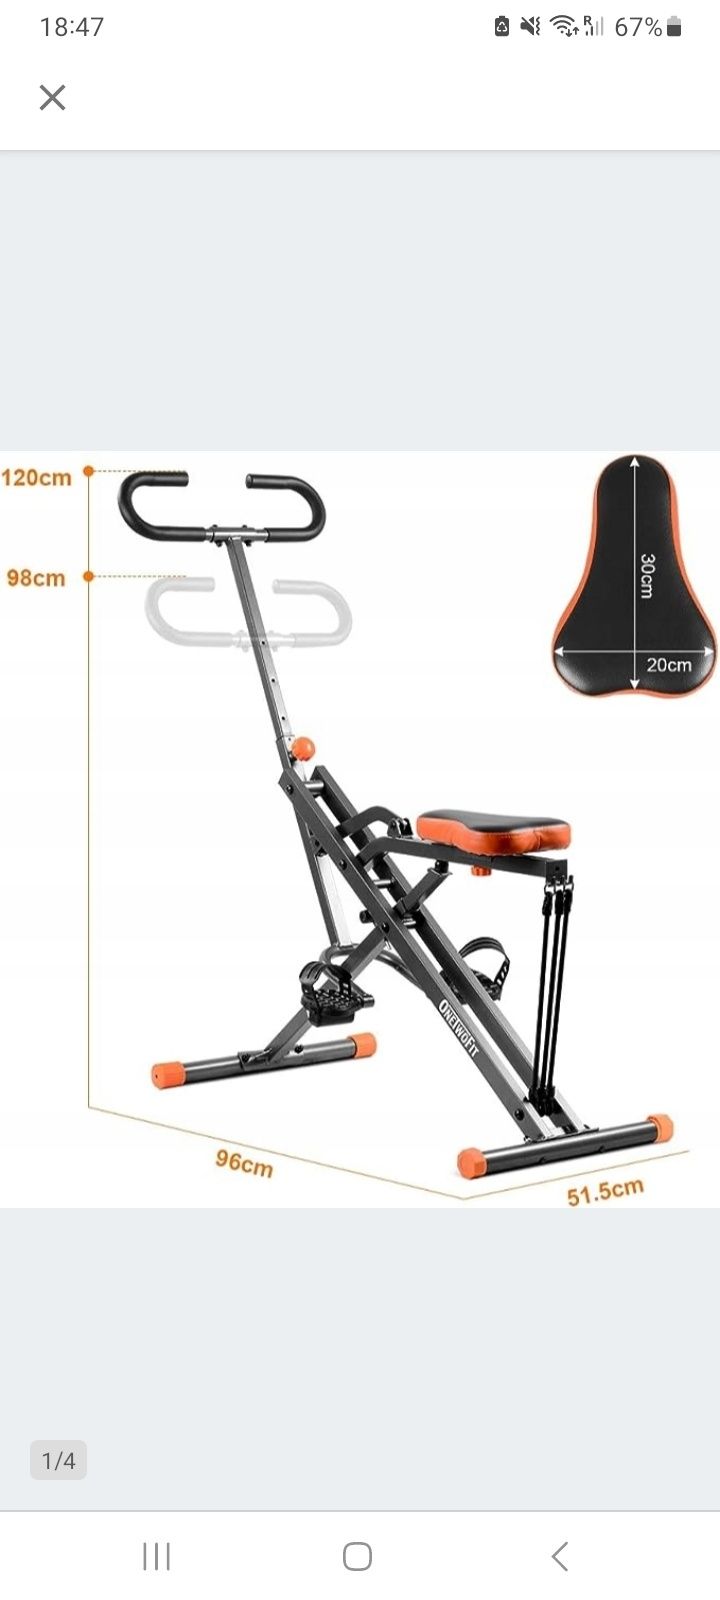 Rowerek/urządzenie do ćwiczeń